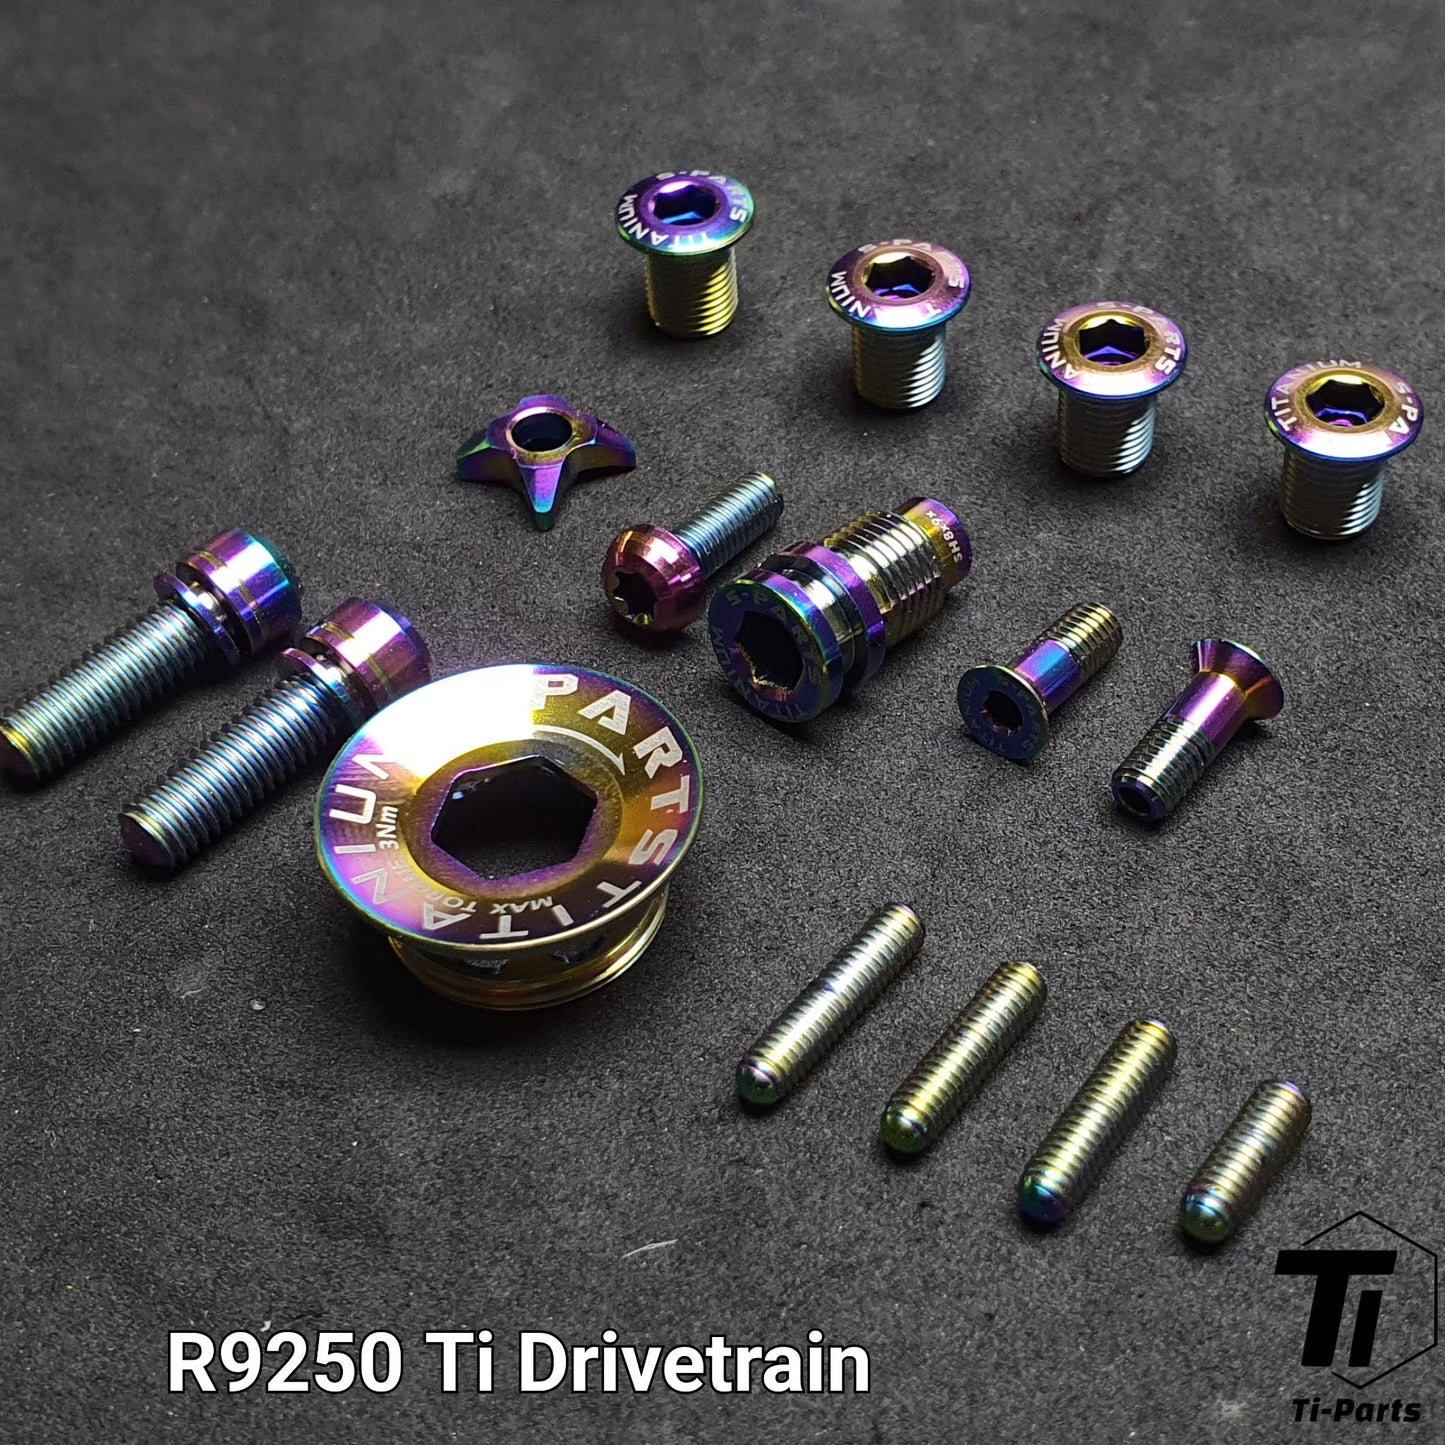 Bộ nâng cấp Titanium cho R9270 R8170 R7170 Shimano | Phanh truyền động Dura Ace Ultegra 105 12s R9200 R9250 R8150 | Vít titan